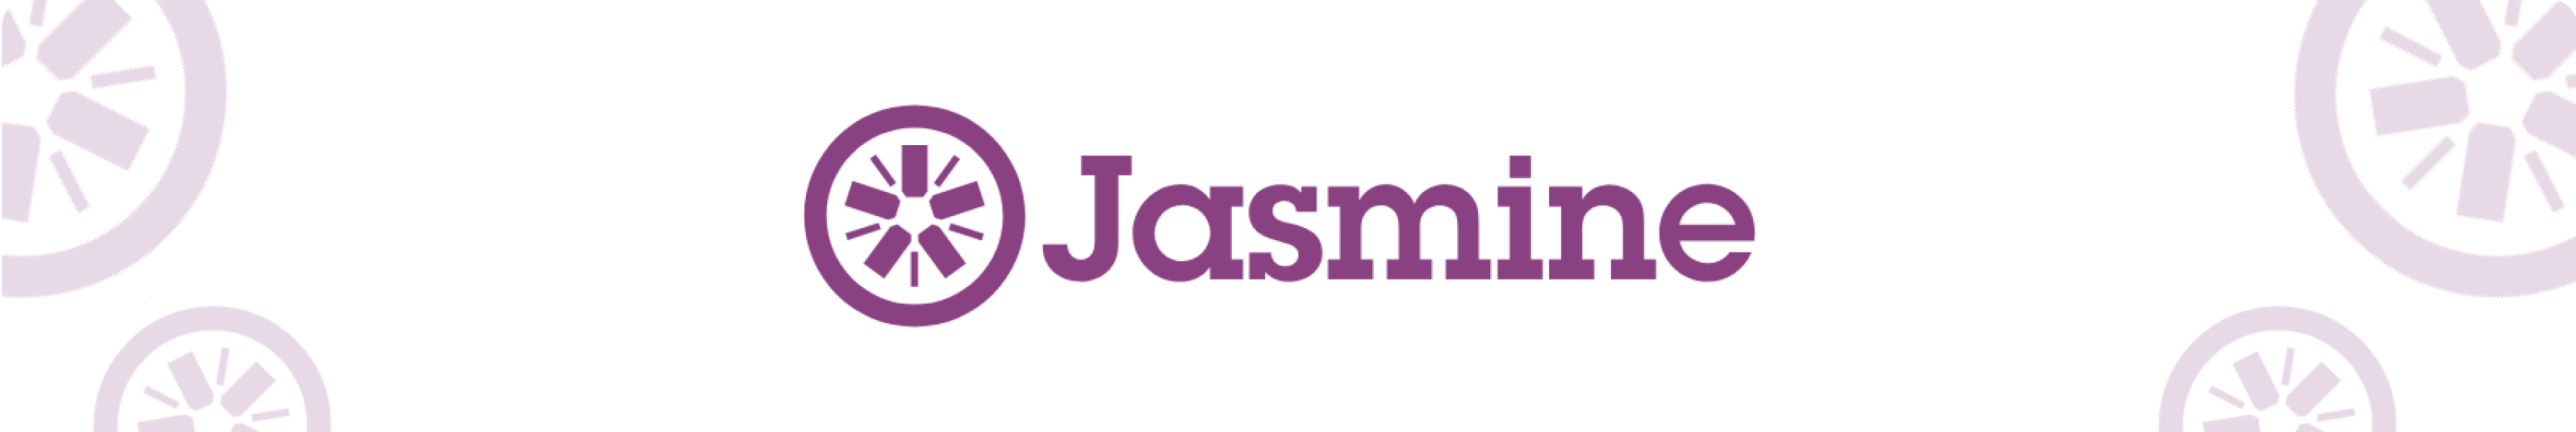 Testsigma - Jasmine